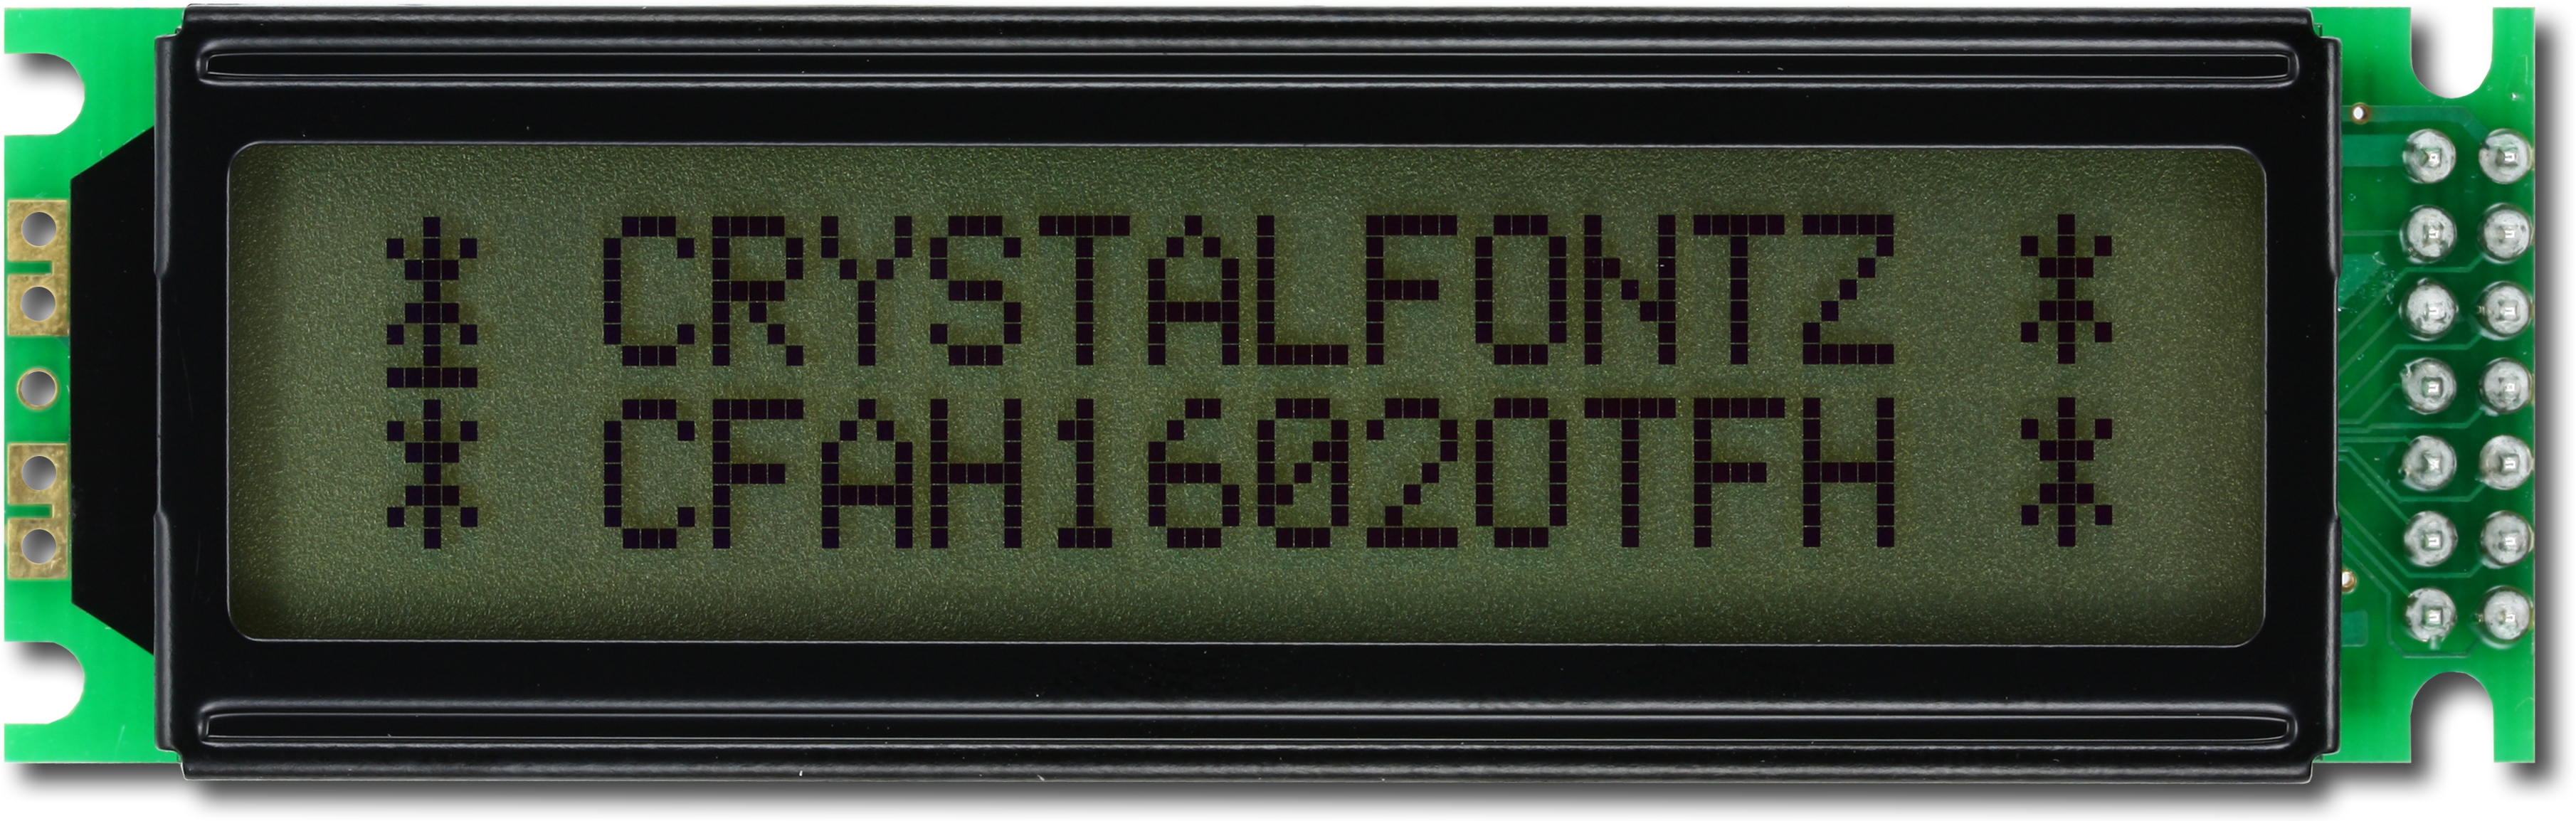 Fordata FC Alphanumerische LCD-Anzeige, Alphanumerisch Zweizeilig, 16  Zeichen, Hintergrund Gelbgrün reflektiv